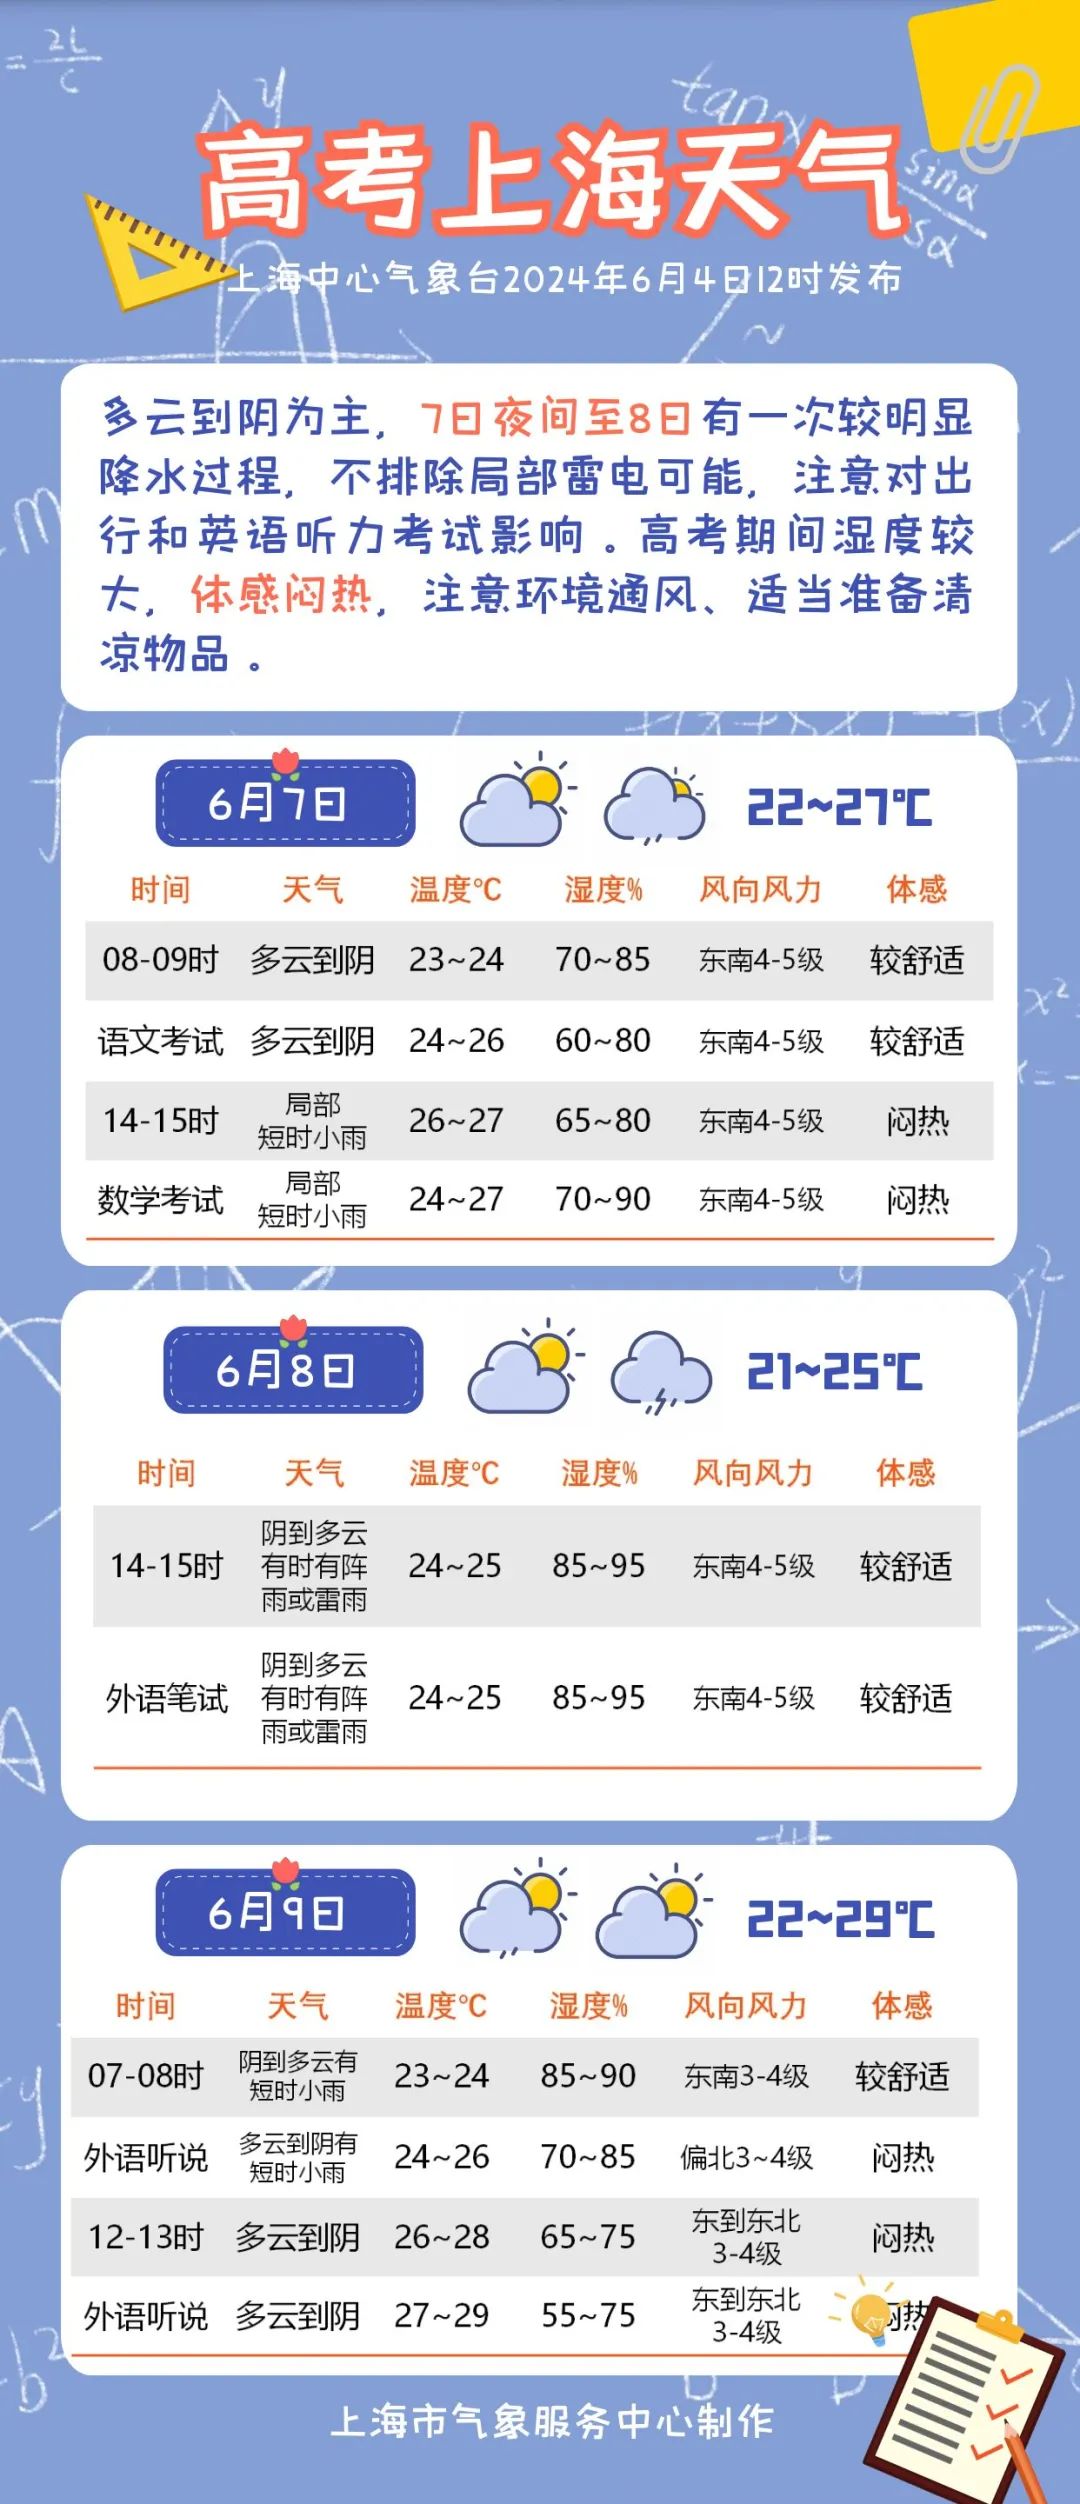 上海高考期间天气预报出炉:7日夜里到8日有一次较明显降水